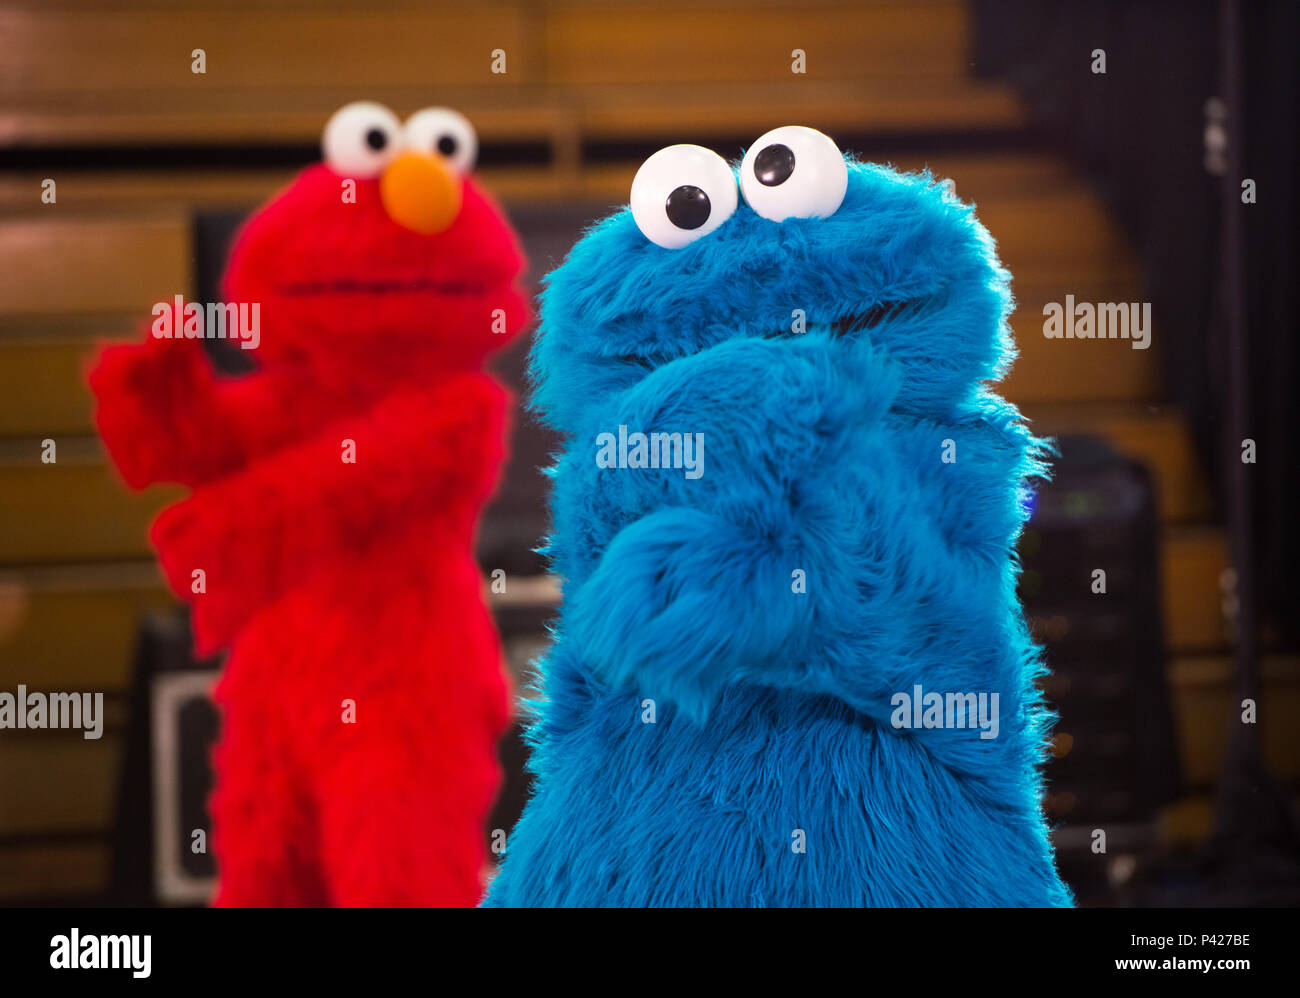 Sesam Straße Zeichen mit dem Cookie Monster Kostüme der Guggenmusig  Födlitätscher, traditionelle Karneval in Stockfotografie - Alamy